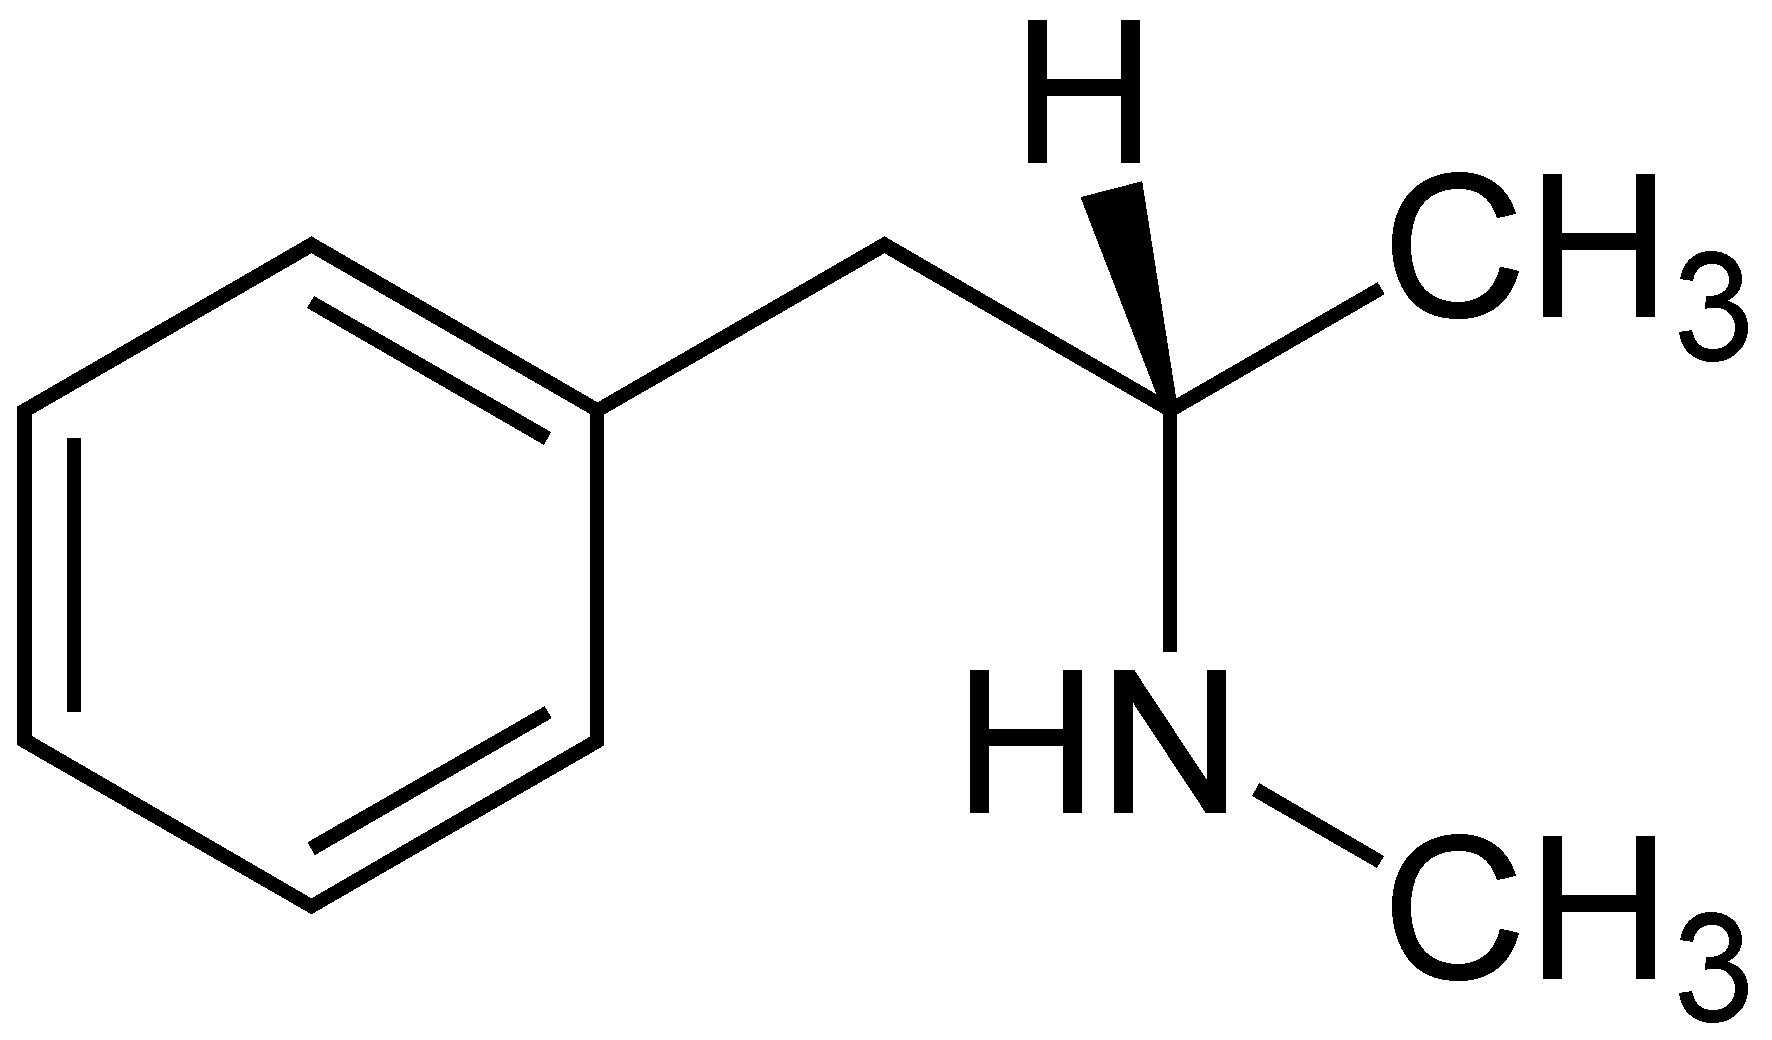 Der chemische Name für Crystal ist N-Methylamphetamin.